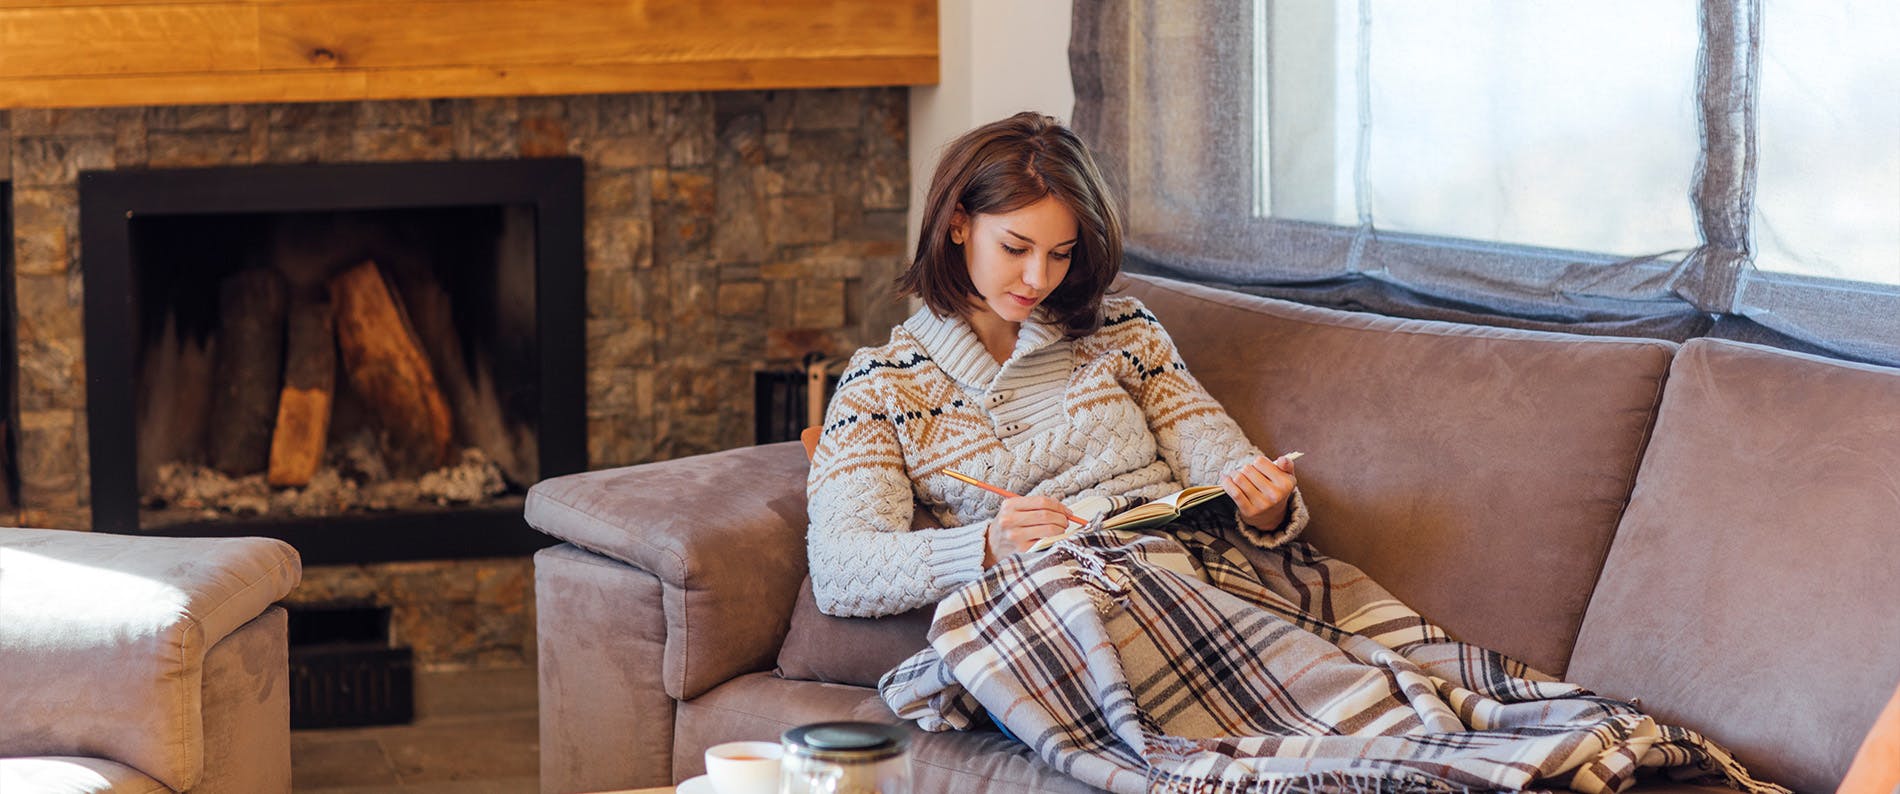 Kvinne sitter i en sofa på hytten og leser et magasin